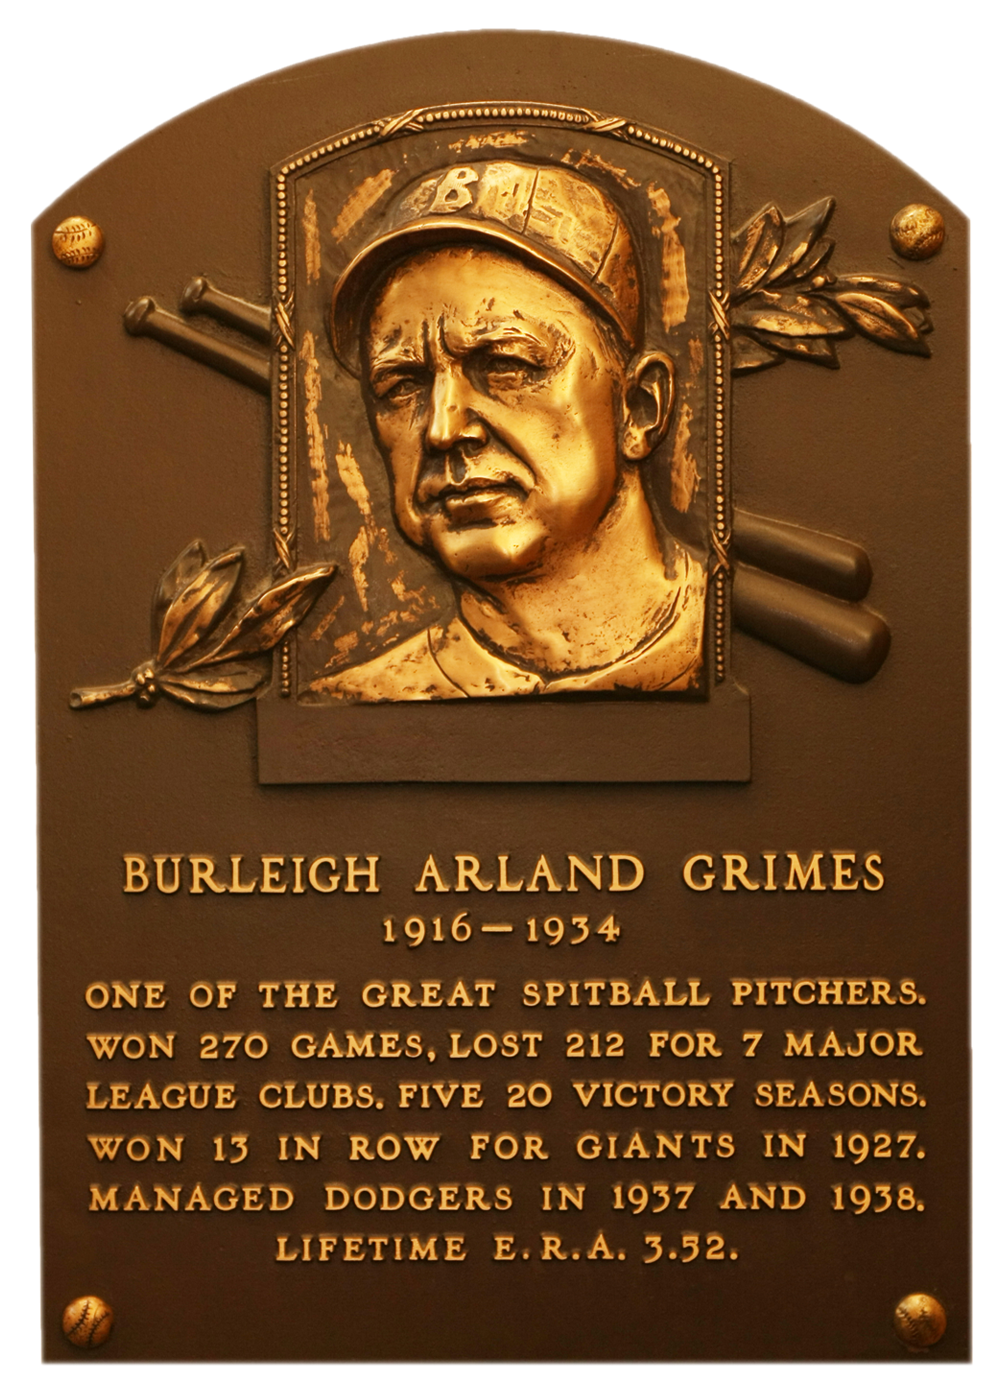  Burleigh Grimes Hall of Fame plaque